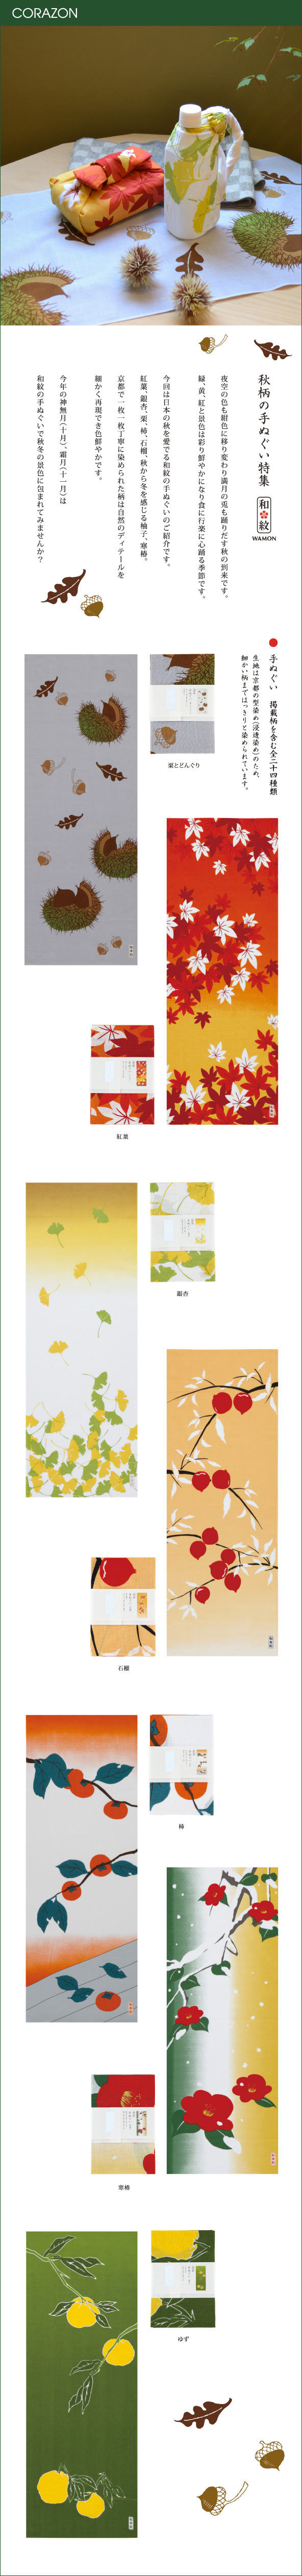 CORAZONメルマガ　20151020<br>

「和柄の手ぬぐい特集」<br>
夜空の色も紺色に移り変わり満月の兎も踊りだす秋の到来です。<br>
緑、黄、紅と景色は彩り鮮やかになり食に行楽に心躍る季節です。<br>
<br>
今回は日本の秋を愛でる和紋の手ぬぐいのご紹介です。<br>
紅葉、銀杏、栗、柿、石榴、秋から冬を感じる柚子、寒椿。<br>
京都で一枚一枚丁寧に染められた柄は自然のディテールを<br>
細かく再現でき色鮮やかです。<br>
<br>
今年の神無月（十月）、霜月（十一月）は<br>
和紋の手ぬぐいで秋冬の景色に包まれてみませんか？<br>
<br>
